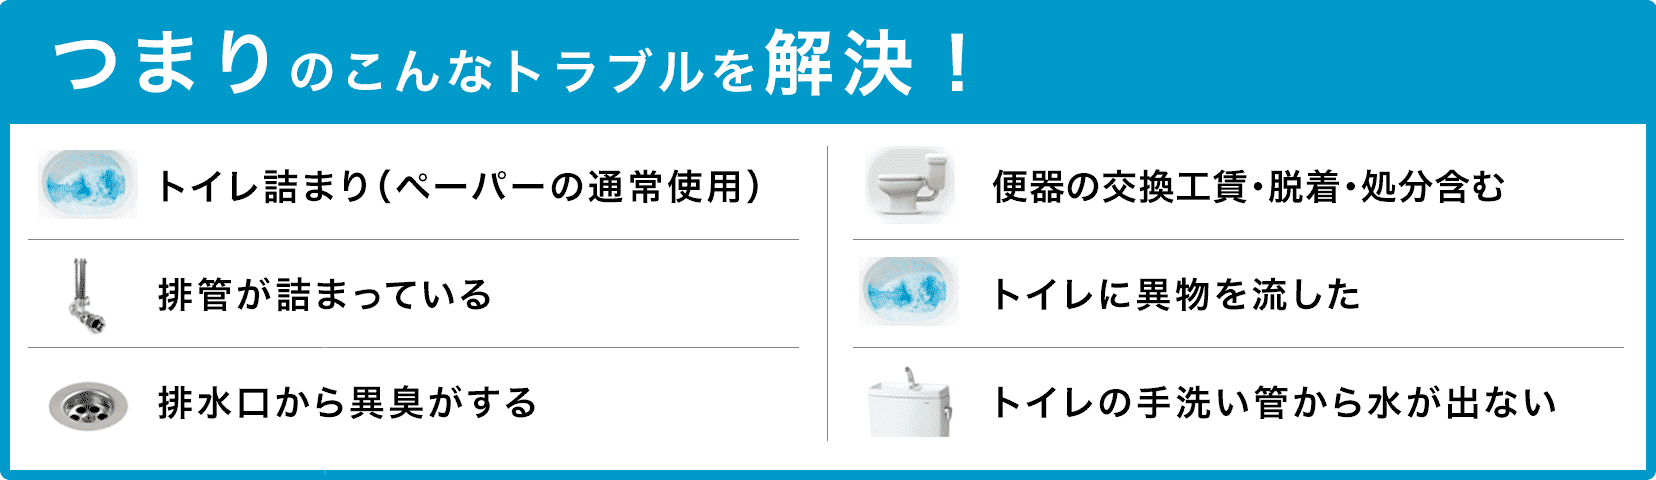 トイレタンクの水が止まらない/トイレタンクから水が出ない/トイレつまり（ペーパーの通常使用)/トイレに異物を流した/便器の交換（工賃のみ)・脱着・処分含む/トイレの手洗い管から水が出ない/ウォッシュレットの取付作業 京都市北区